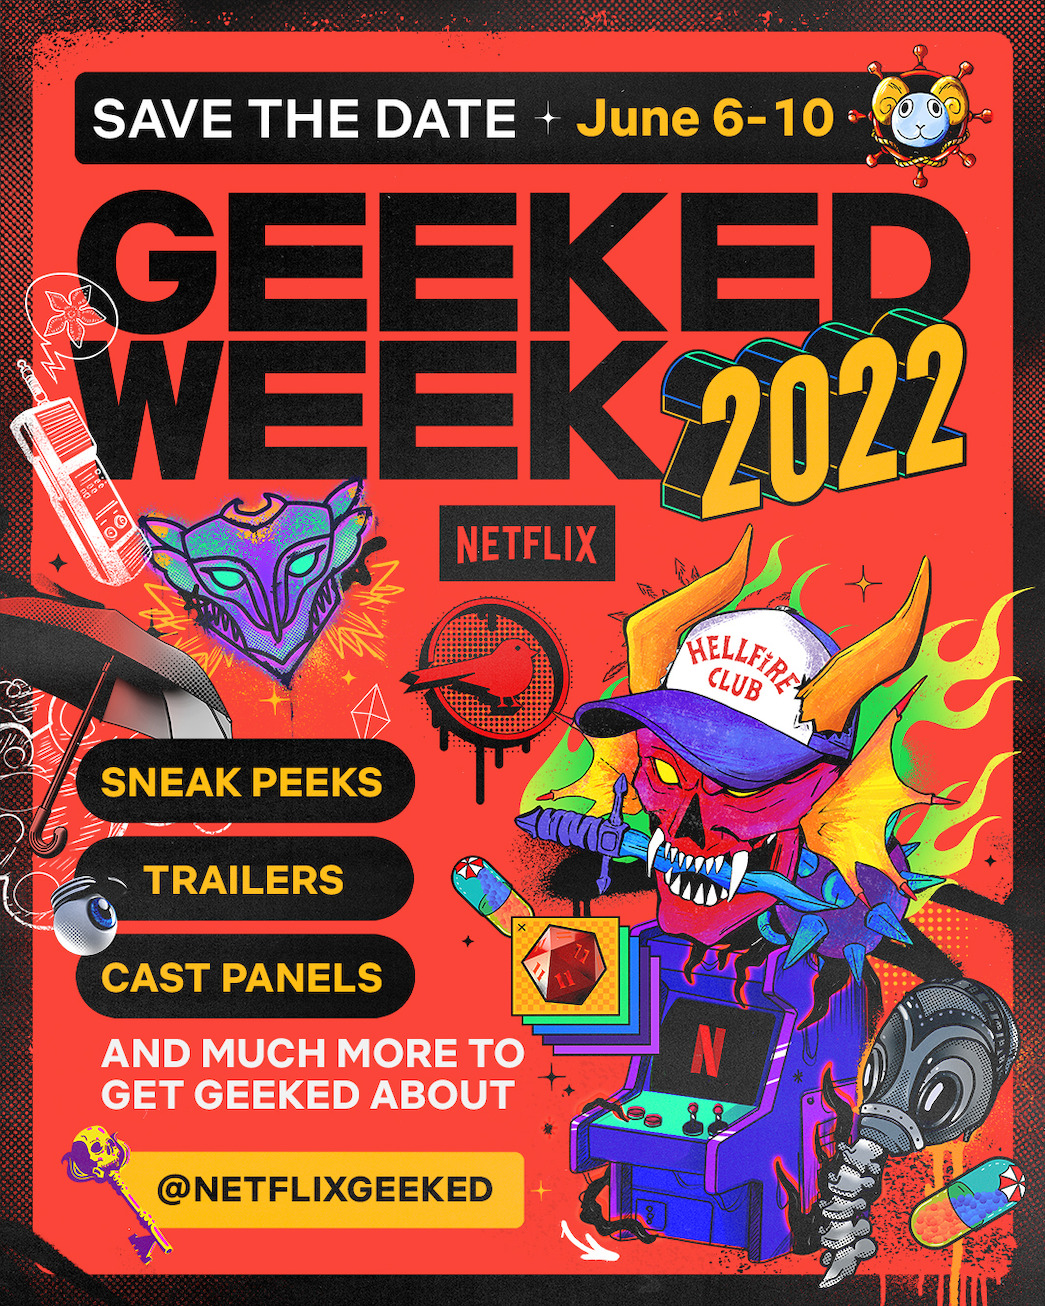 Netflix Geeked Week 2022 Dates Announced - Netflix Tudum